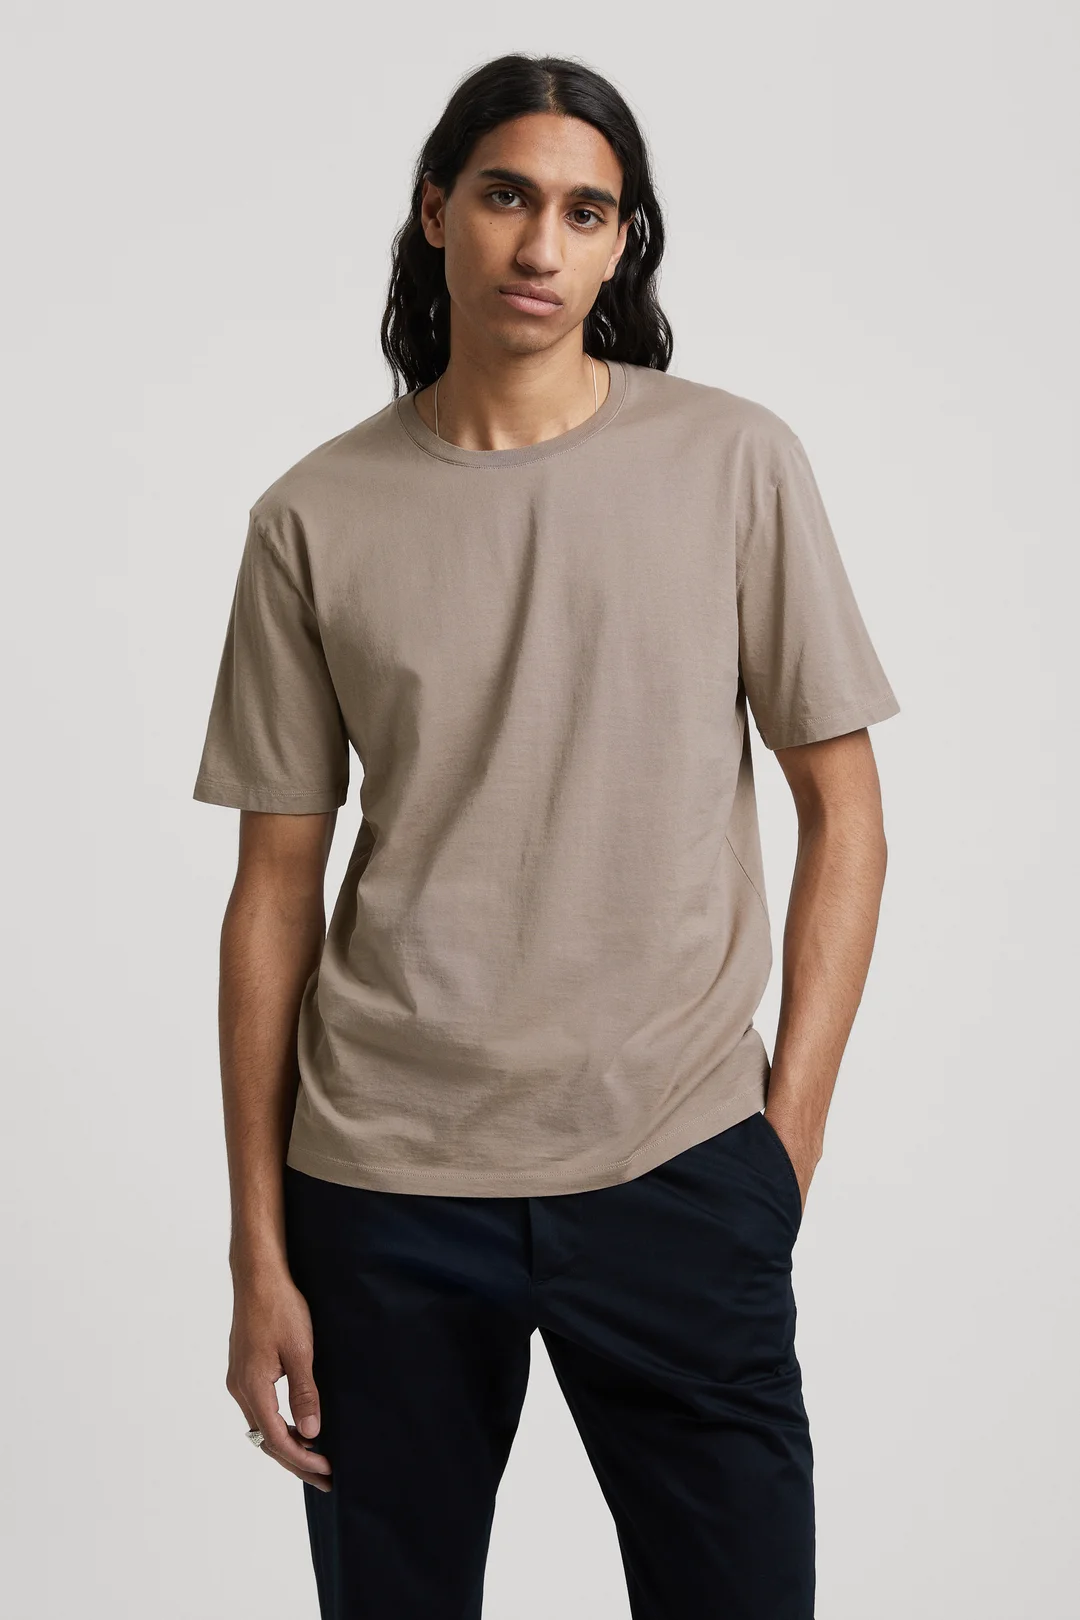 ASKET - Lightweight T-Shirt Black - Cotton - Mens